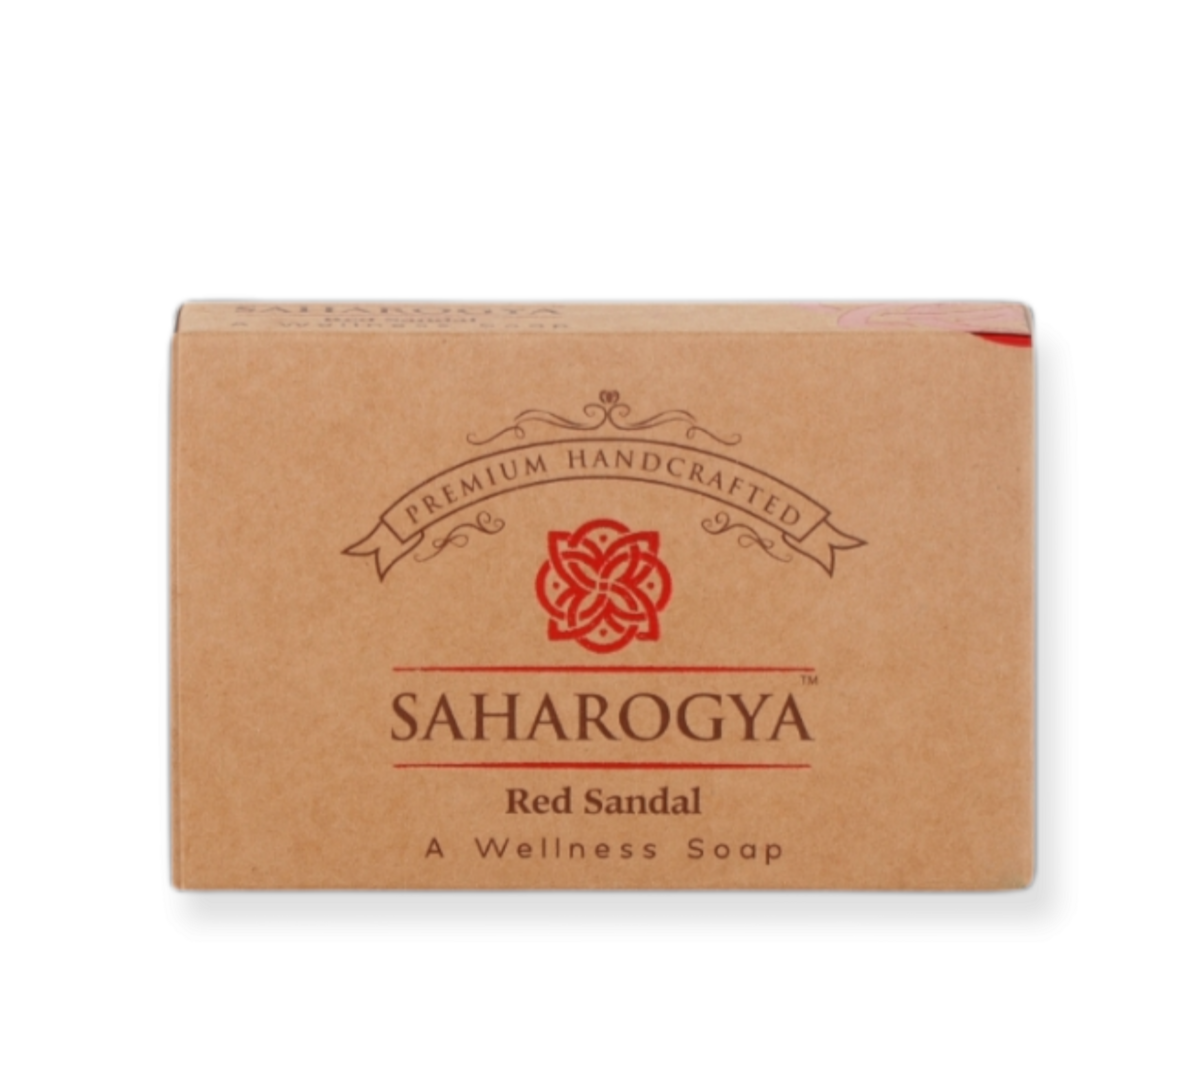 Saharogya Red Sandal Saippua-Saharogya-Hyvinvoinnin Tavaratalo